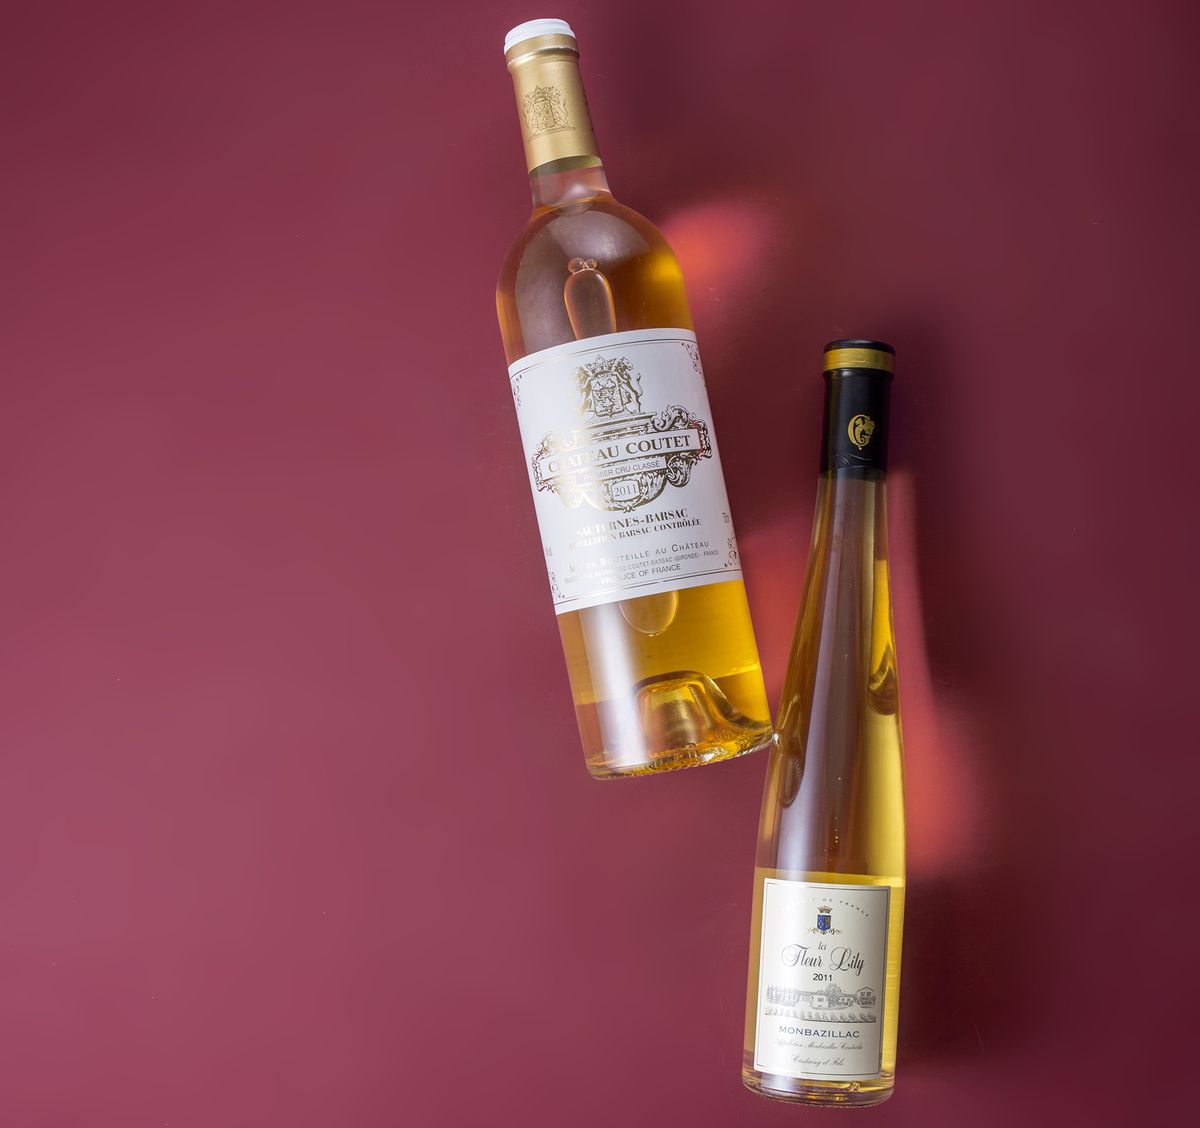 A Sauternes és a Monbazillac botriszta borok Franciaországból származnak